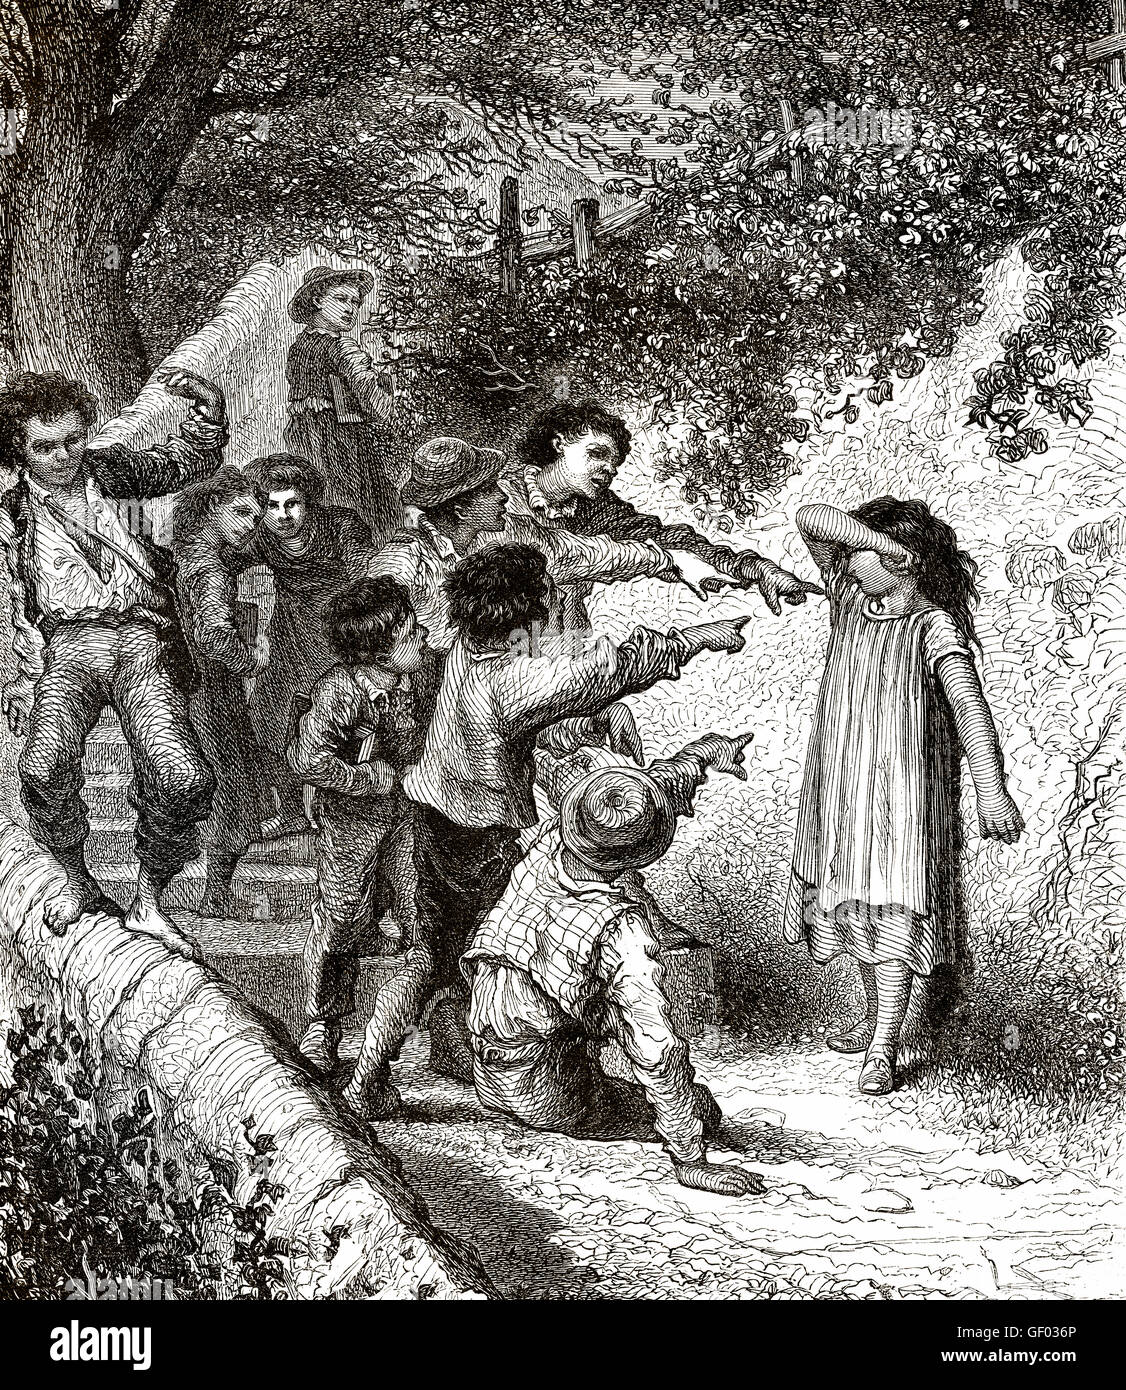 Los niños la intimidación de una persona por parte de un grupo, del siglo XIX. Foto de stock